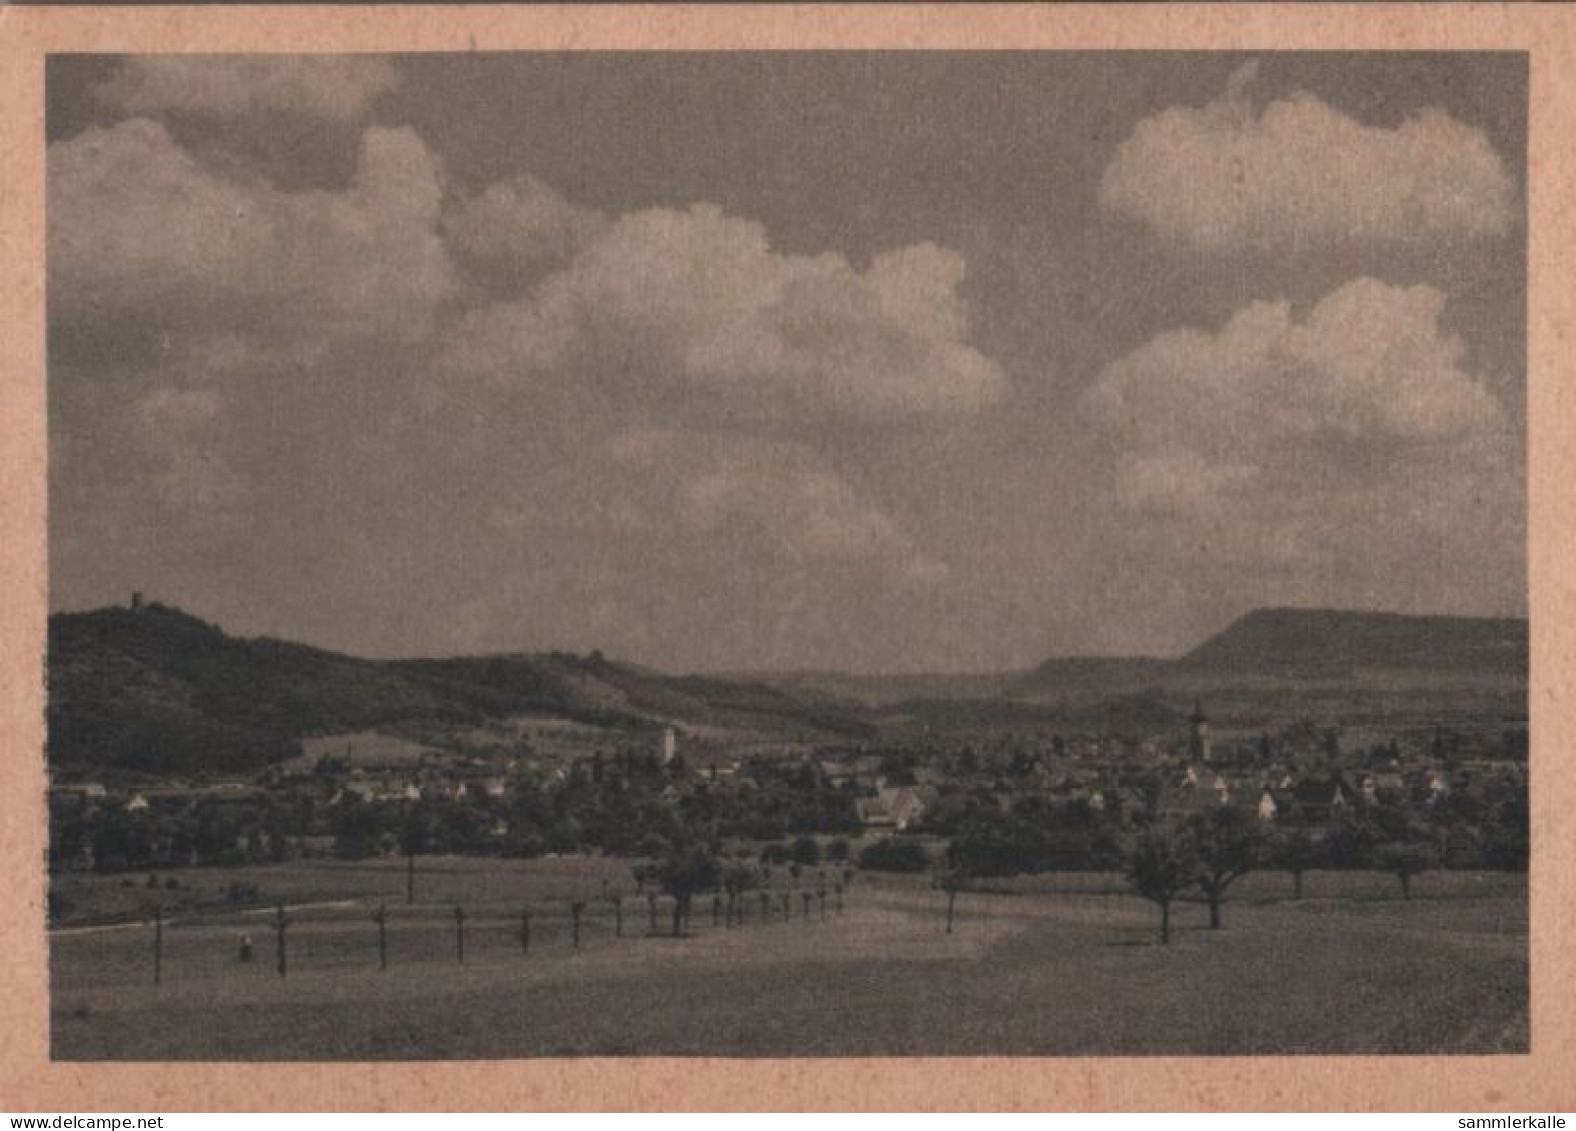 55558 - Süssen - Mit Staufeneck - Ca. 1950 - Goeppingen